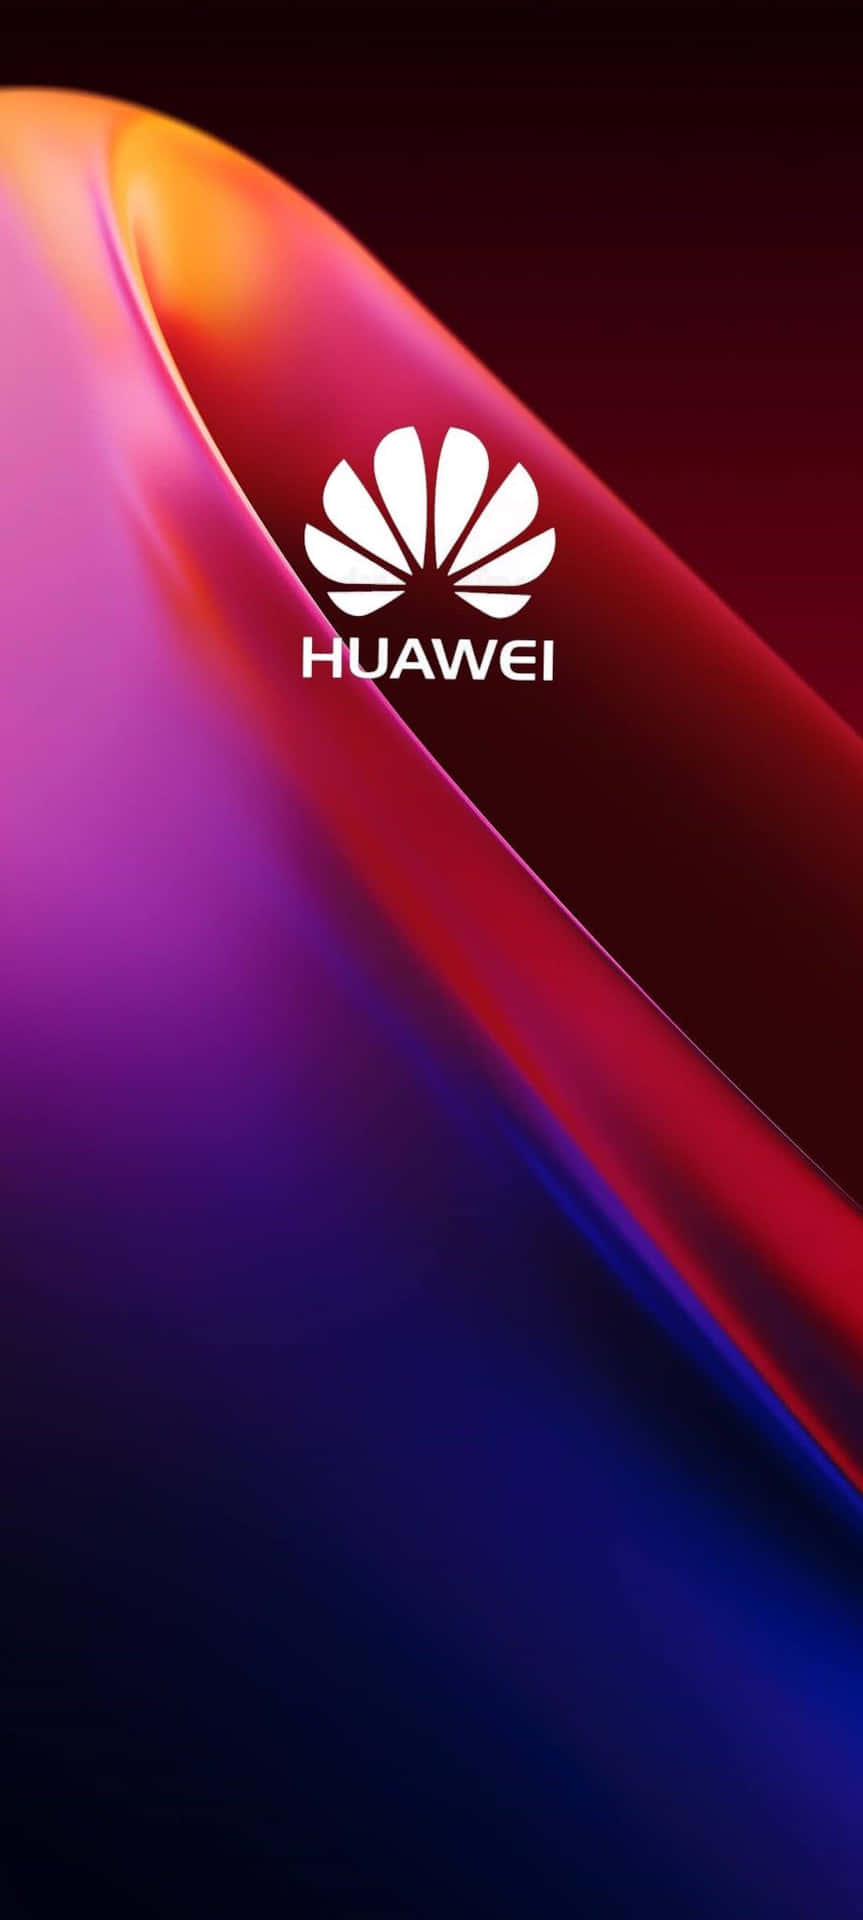 Fremtidenfor Kommunikation Med Huawei